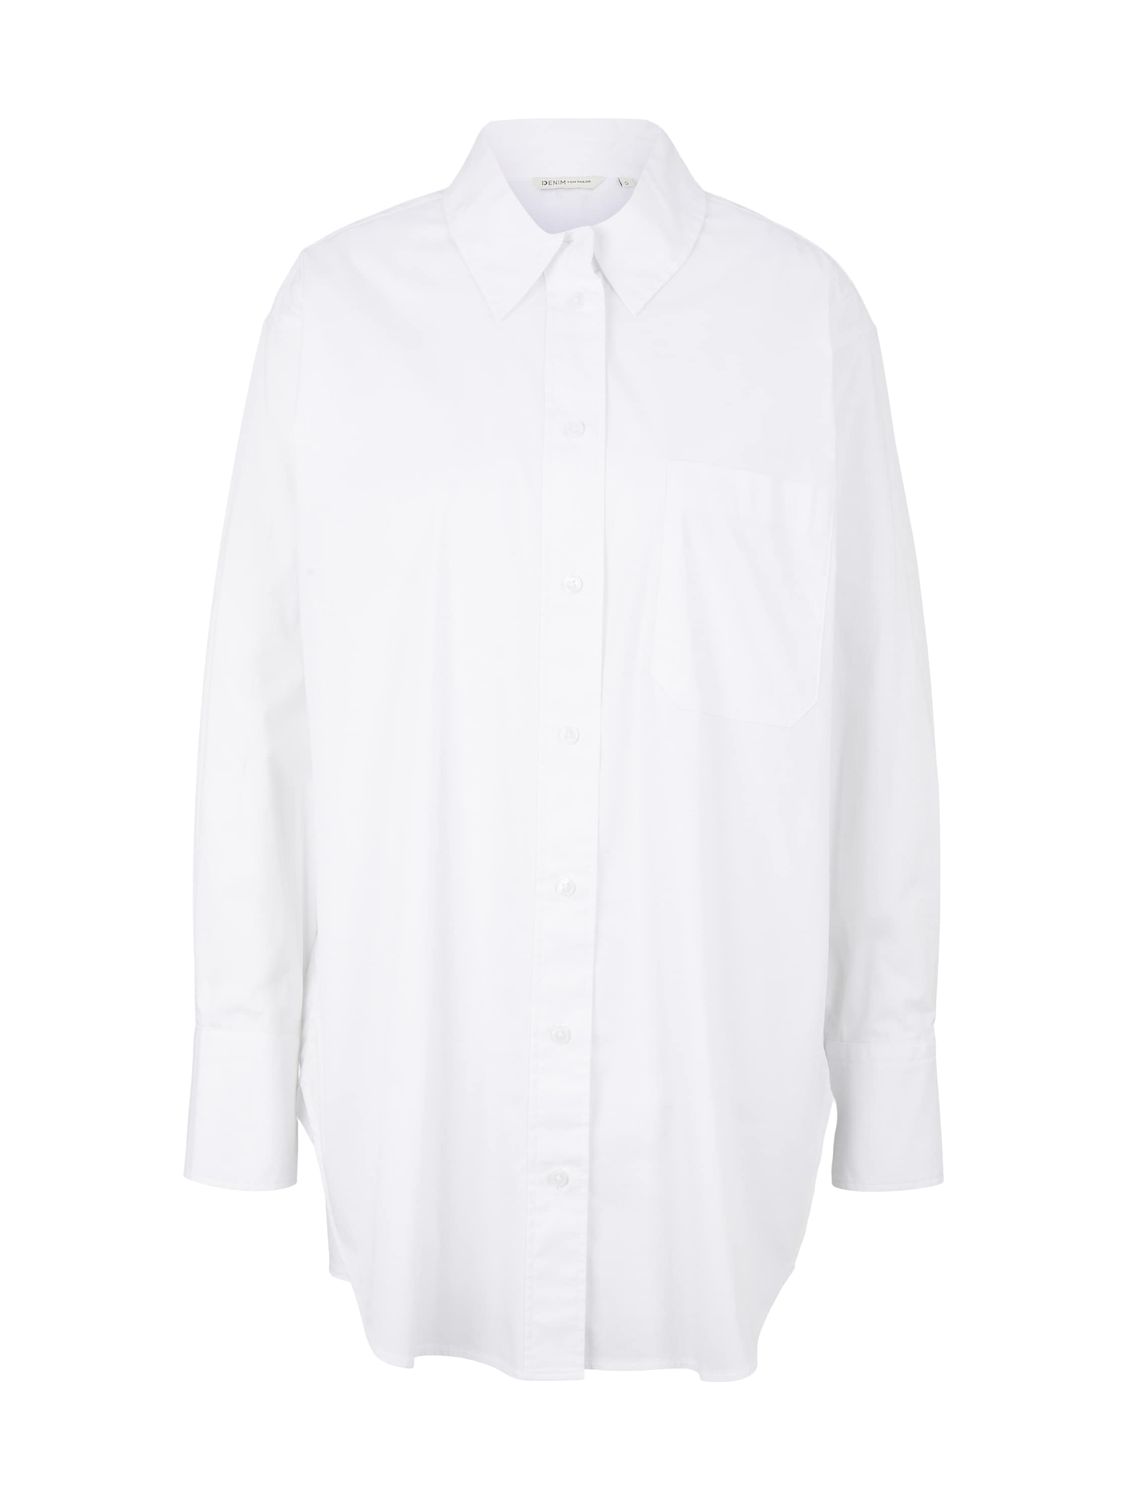 Блуза TOM TAILOR Denim CHEST POCKET, белый блуза tom tailor denim chest pocket белый